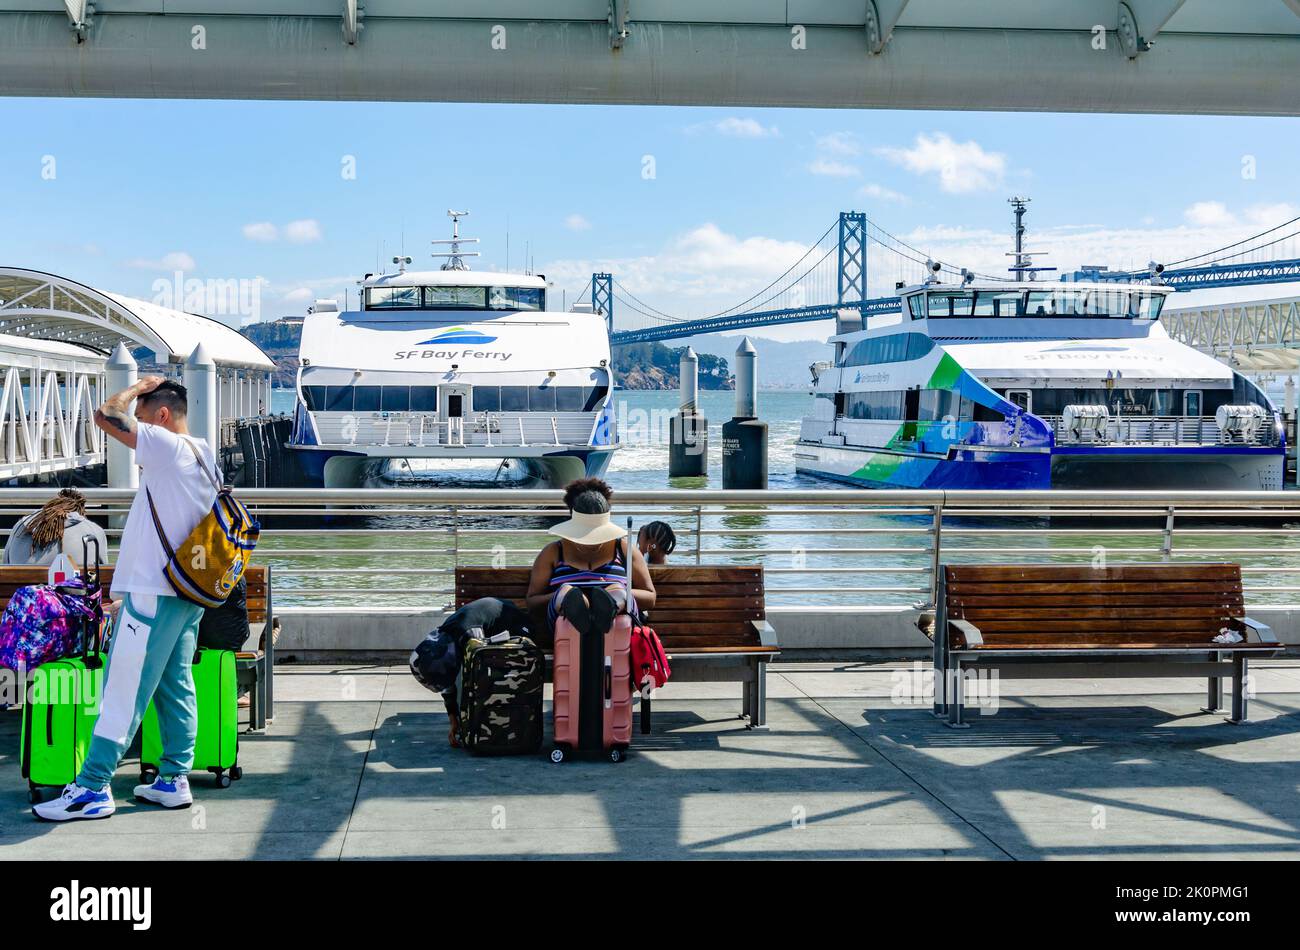 Zwei San Francisco Bay Ferries, die im San Francisco Ferry Terminal festgemacht sind. Passagiere sitzen und warten auf Holzbänken. Stockfoto